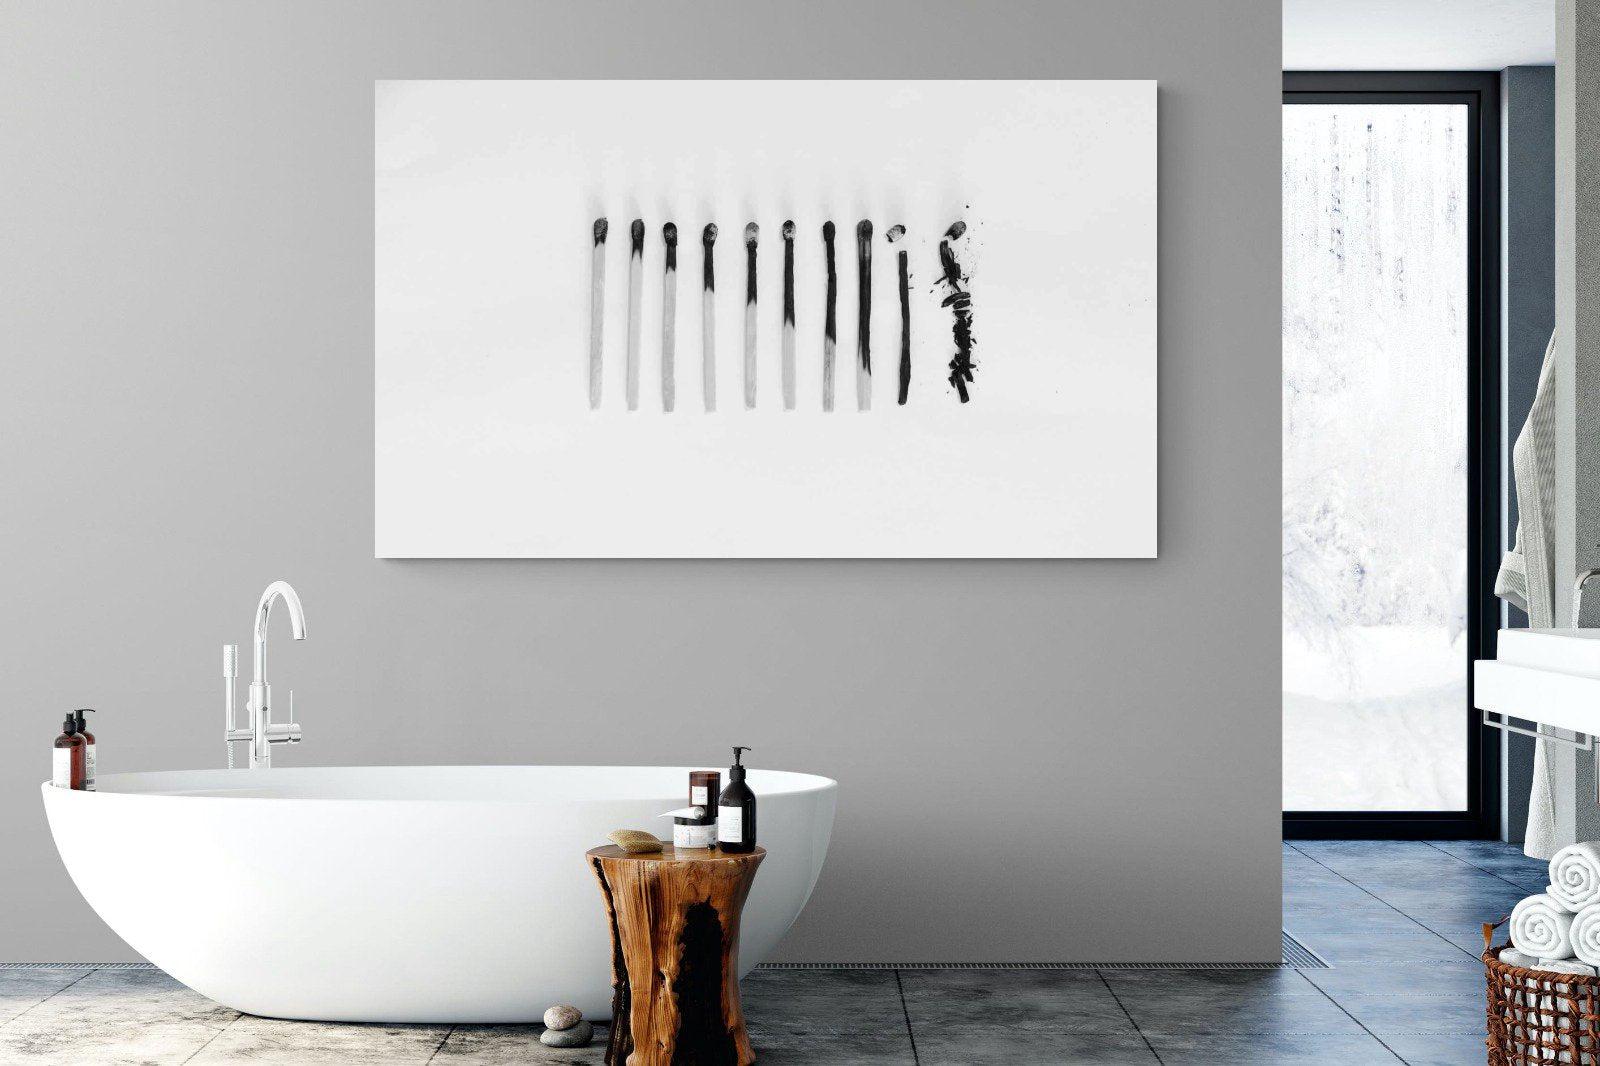 Matchsticks-Wall_Art-180 x 110cm-Mounted Canvas-No Frame-Pixalot